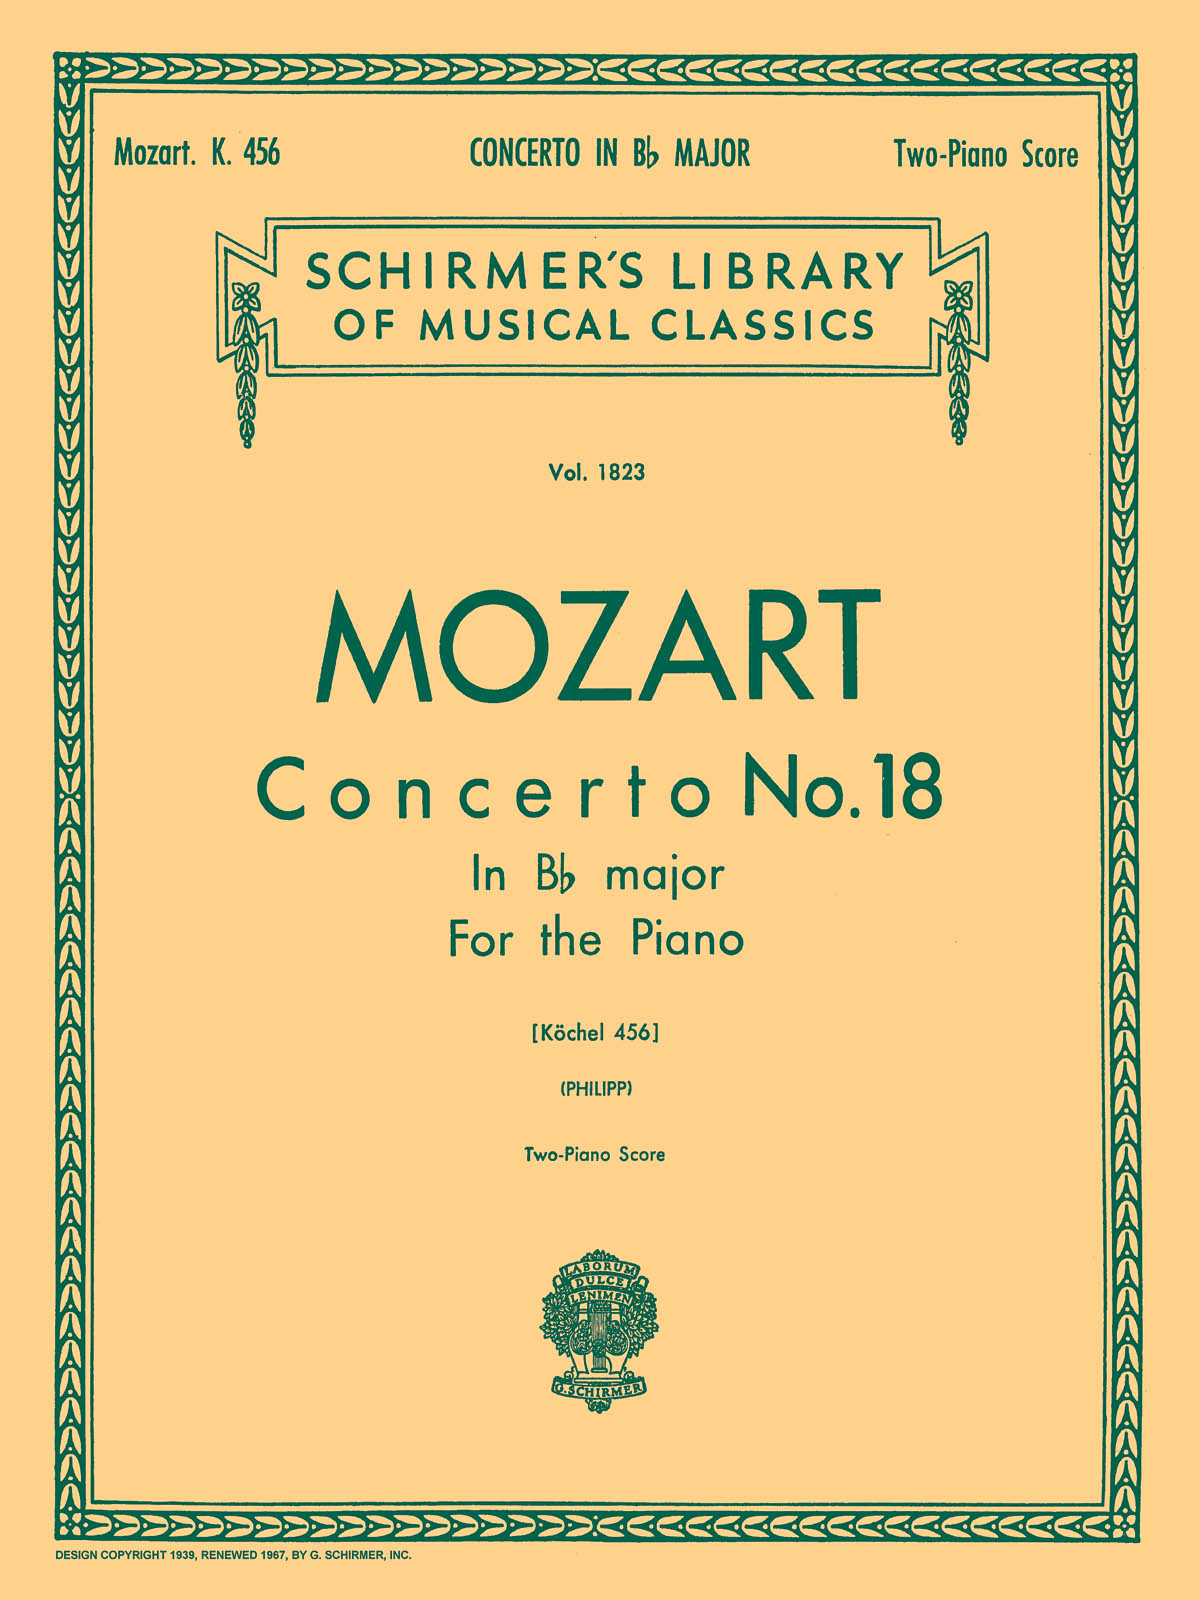 Mozart: Concerto No. 18 in Bb, K.456